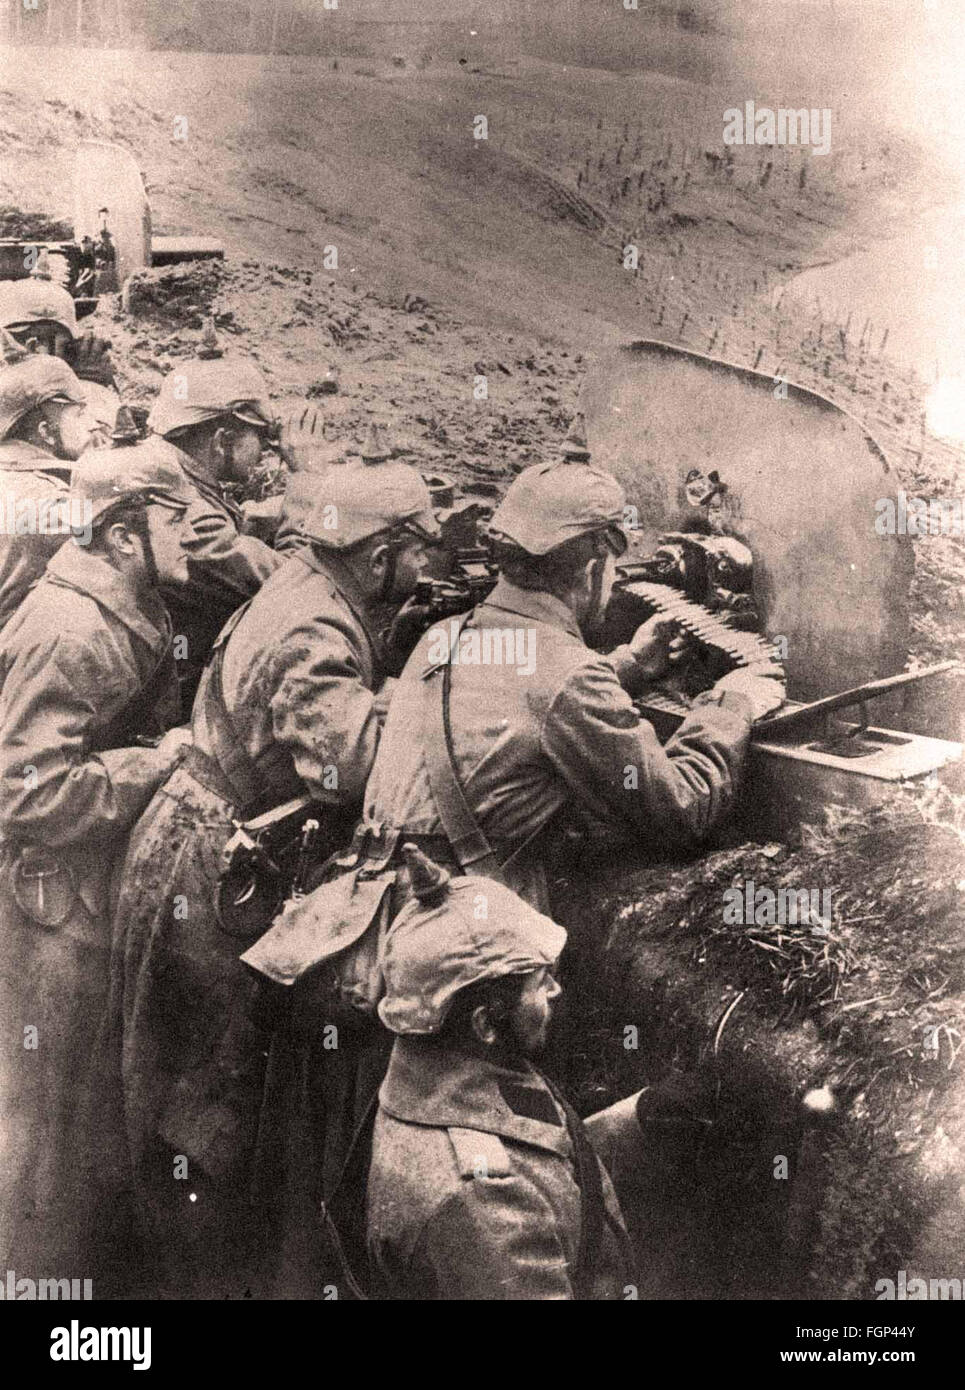 Schlacht von Verdun 1916 - deutsche Soldaten in einem Graben mit einem Maschinengewehr Stockfoto